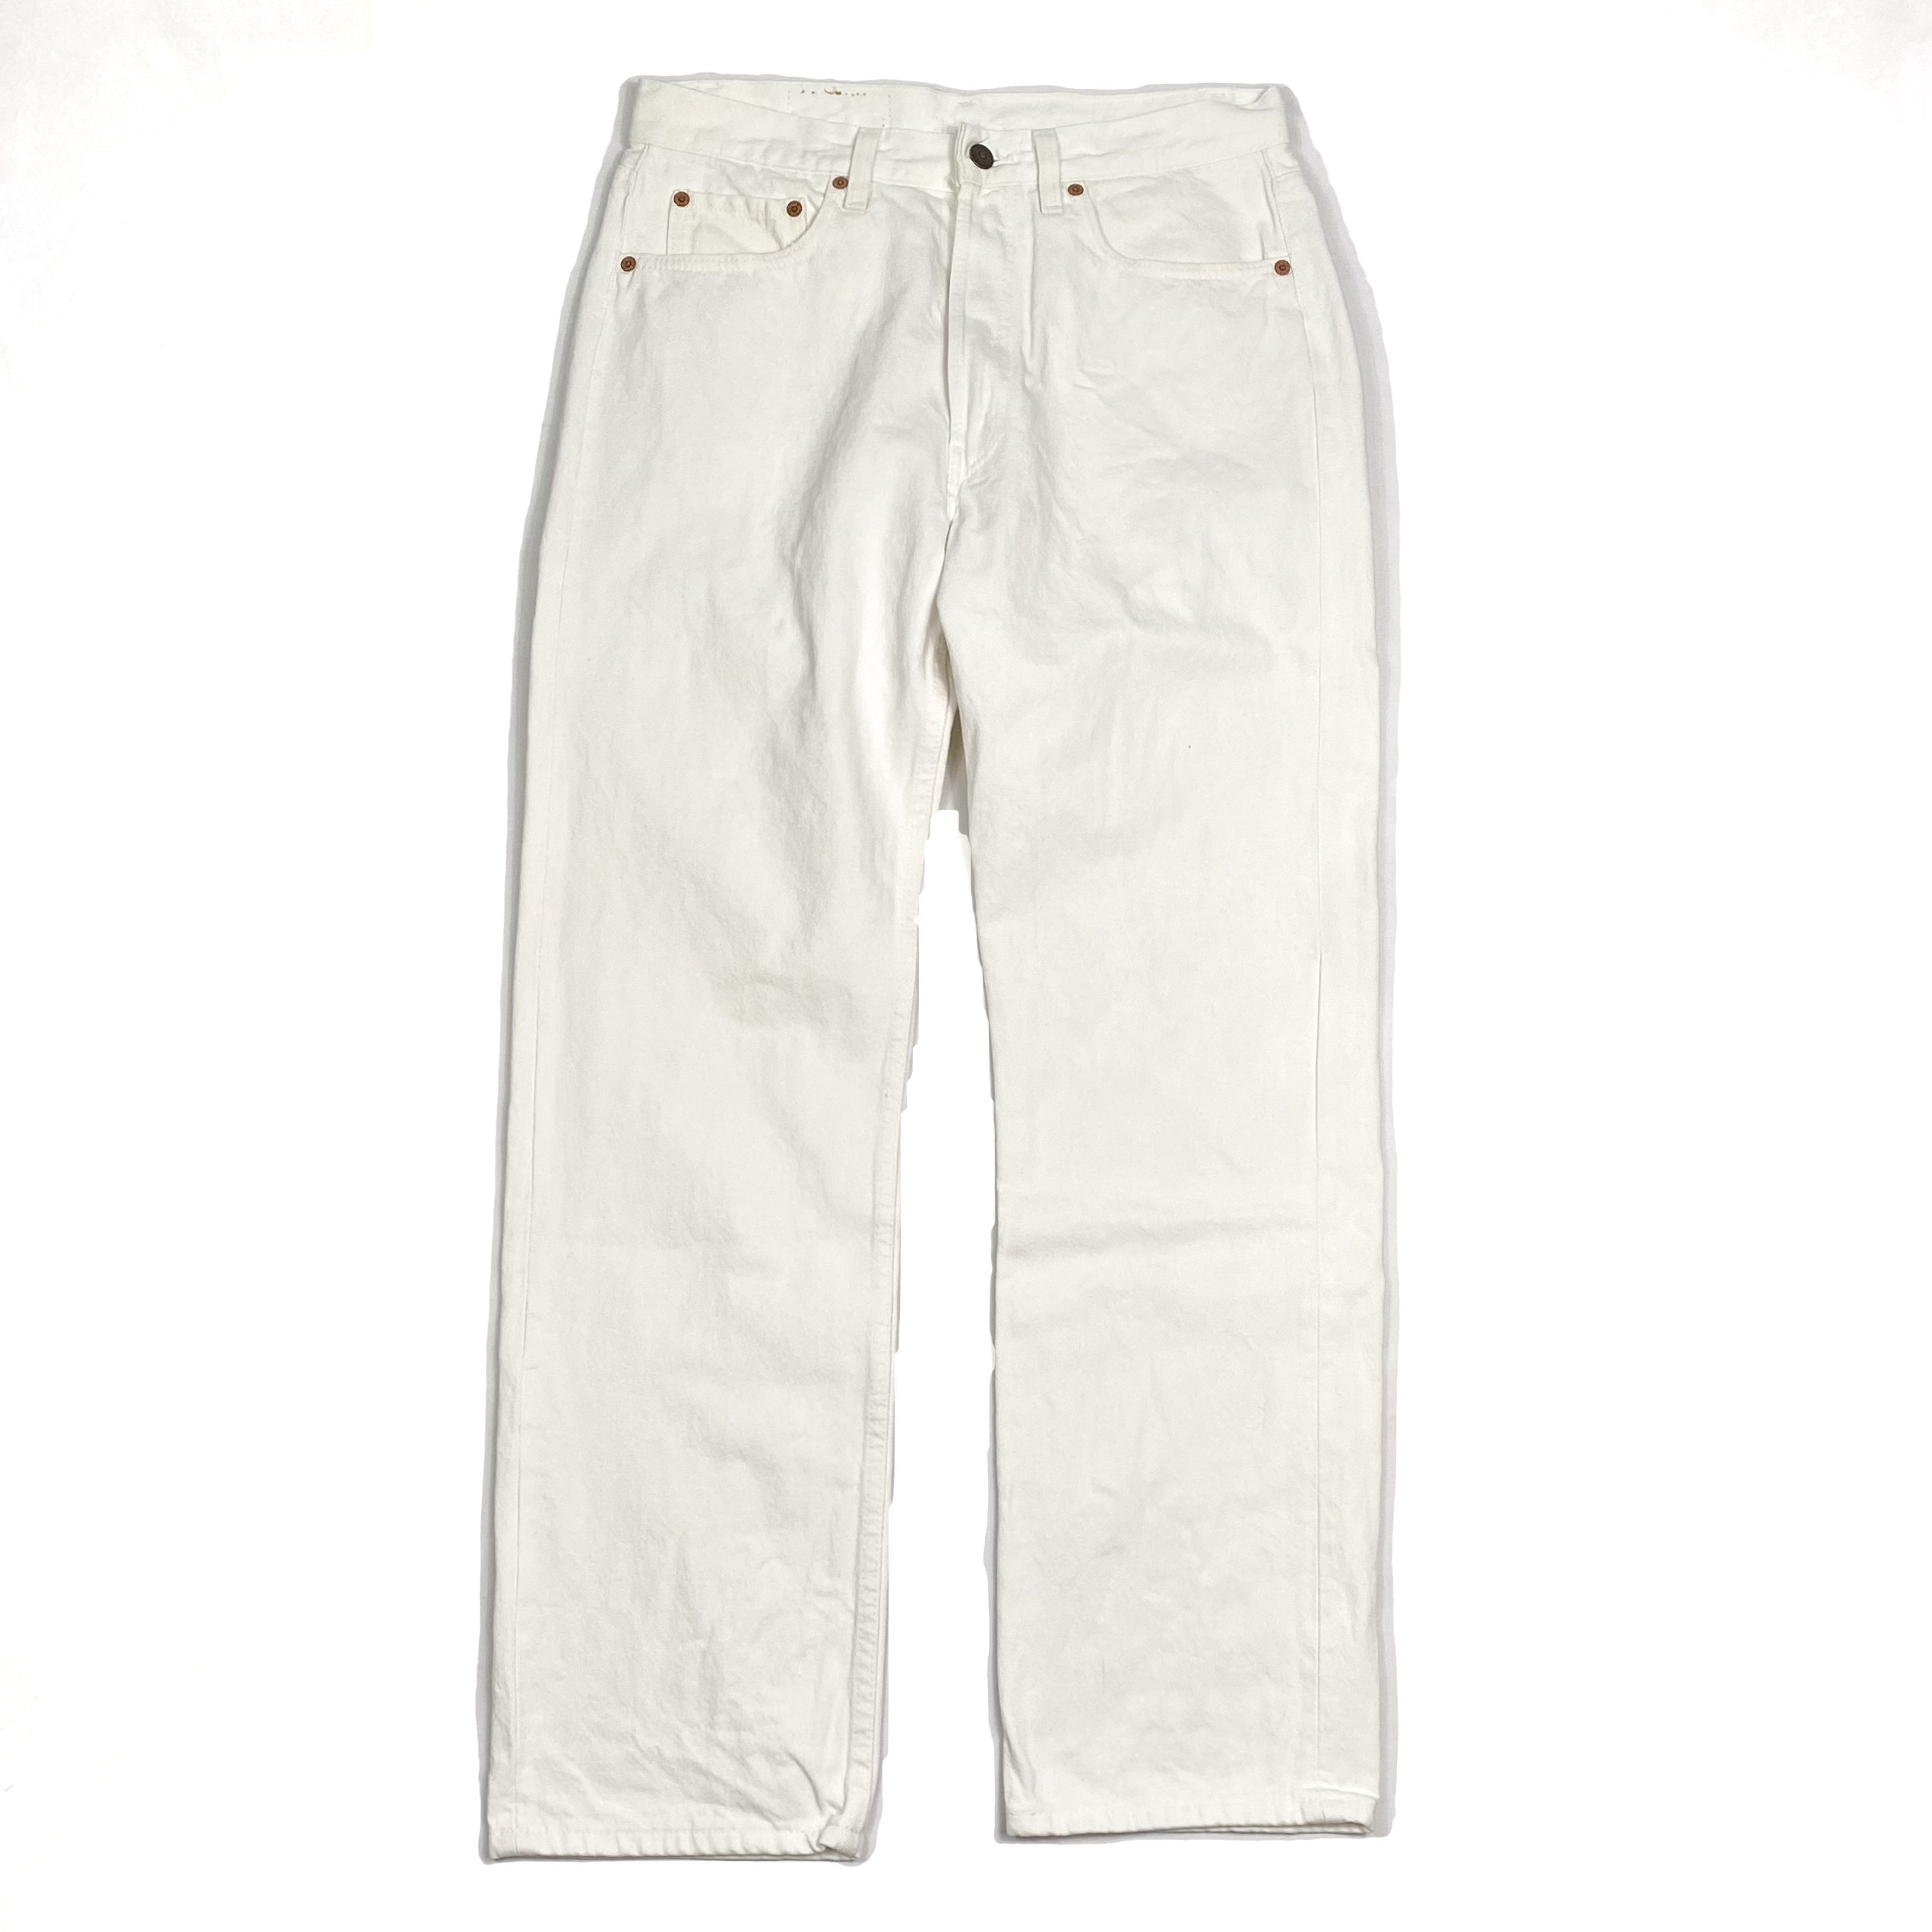 Levi's 501 Denim Pants White / リーバイス デニム ジーンズ ホワイト 廃盤 古着 | WhiteHeadEagle